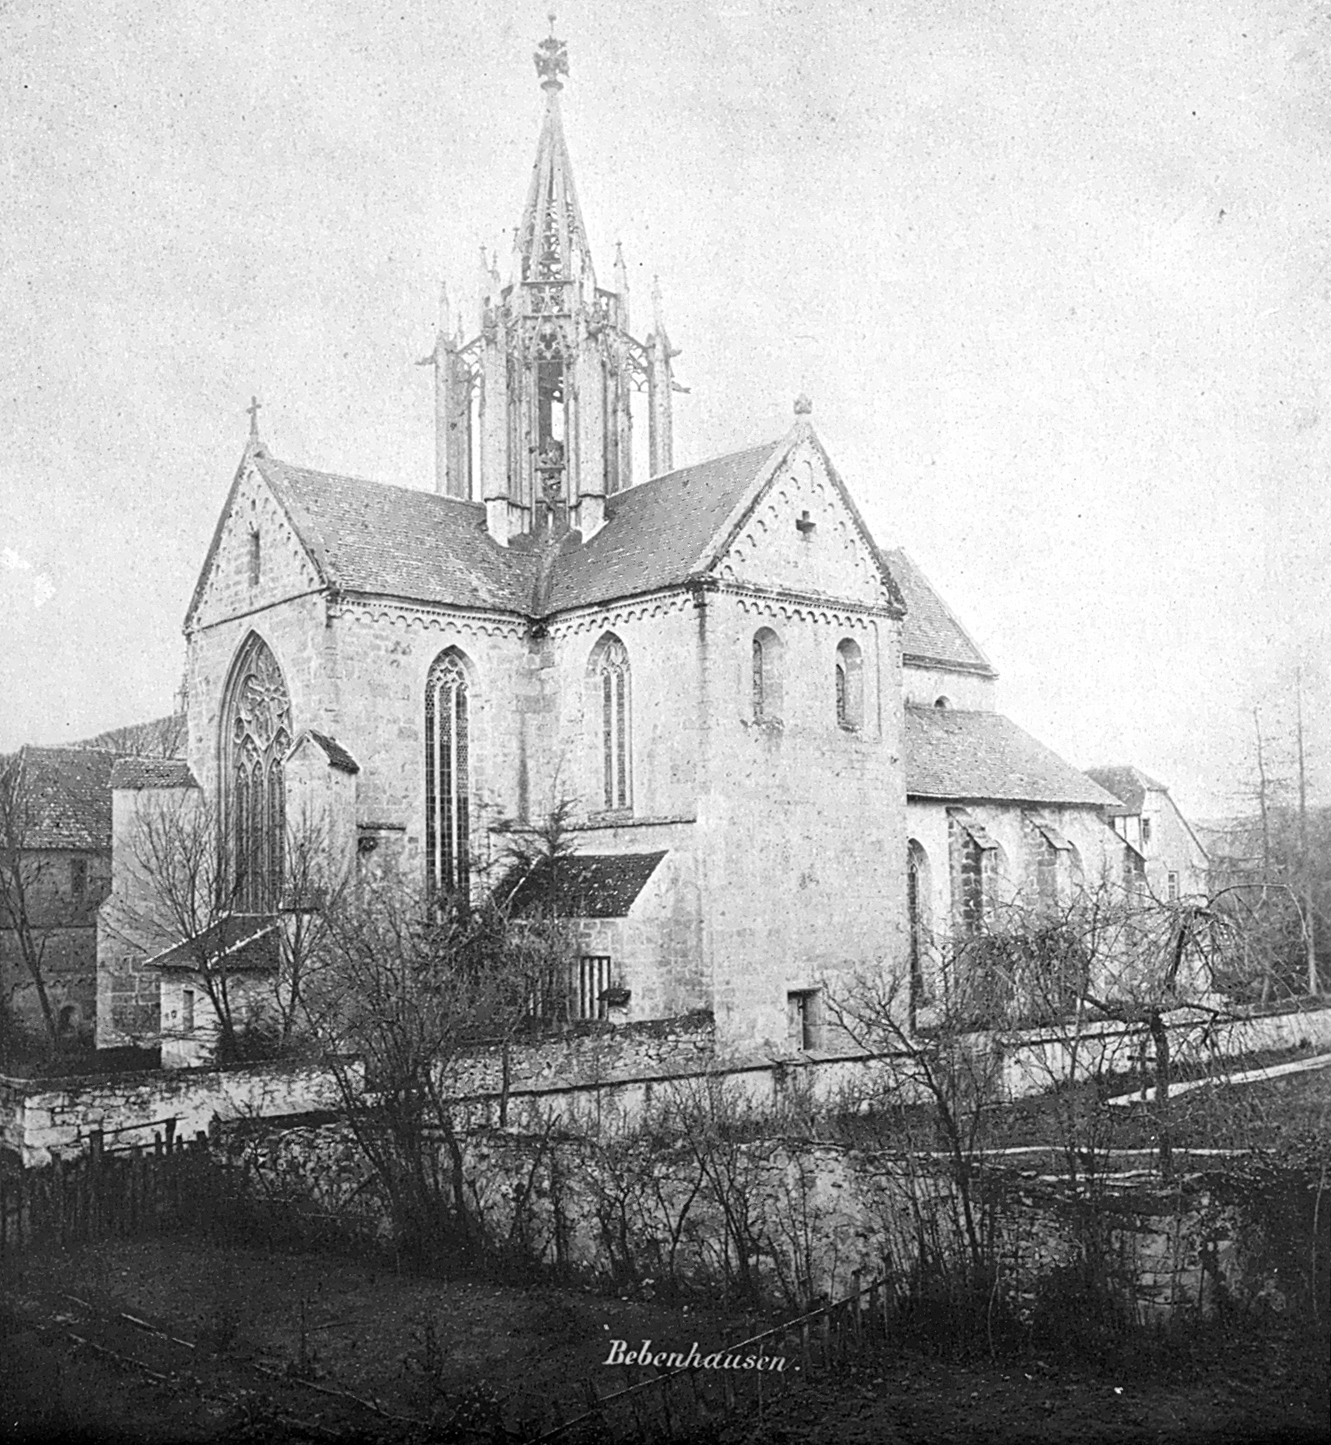 Bebenhausen Monastery Church 1869 - long